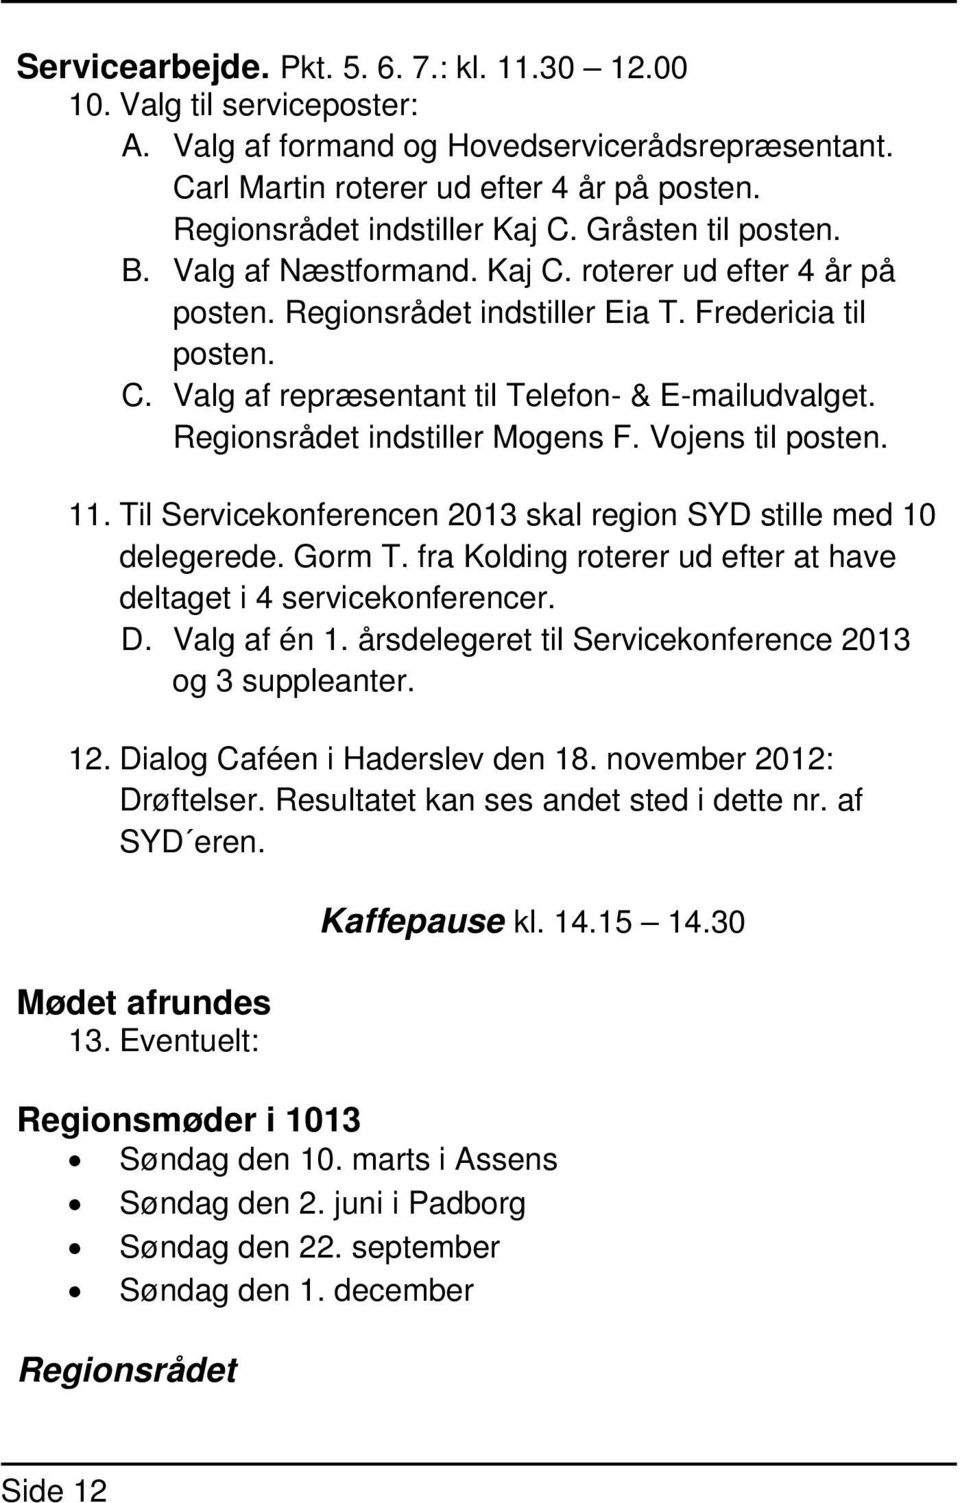 Regionsrådet indstiller Mogens F. Vojens til posten. 11. Til Servicekonferencen 2013 skal region SYD stille med 10 delegerede. Gorm T.